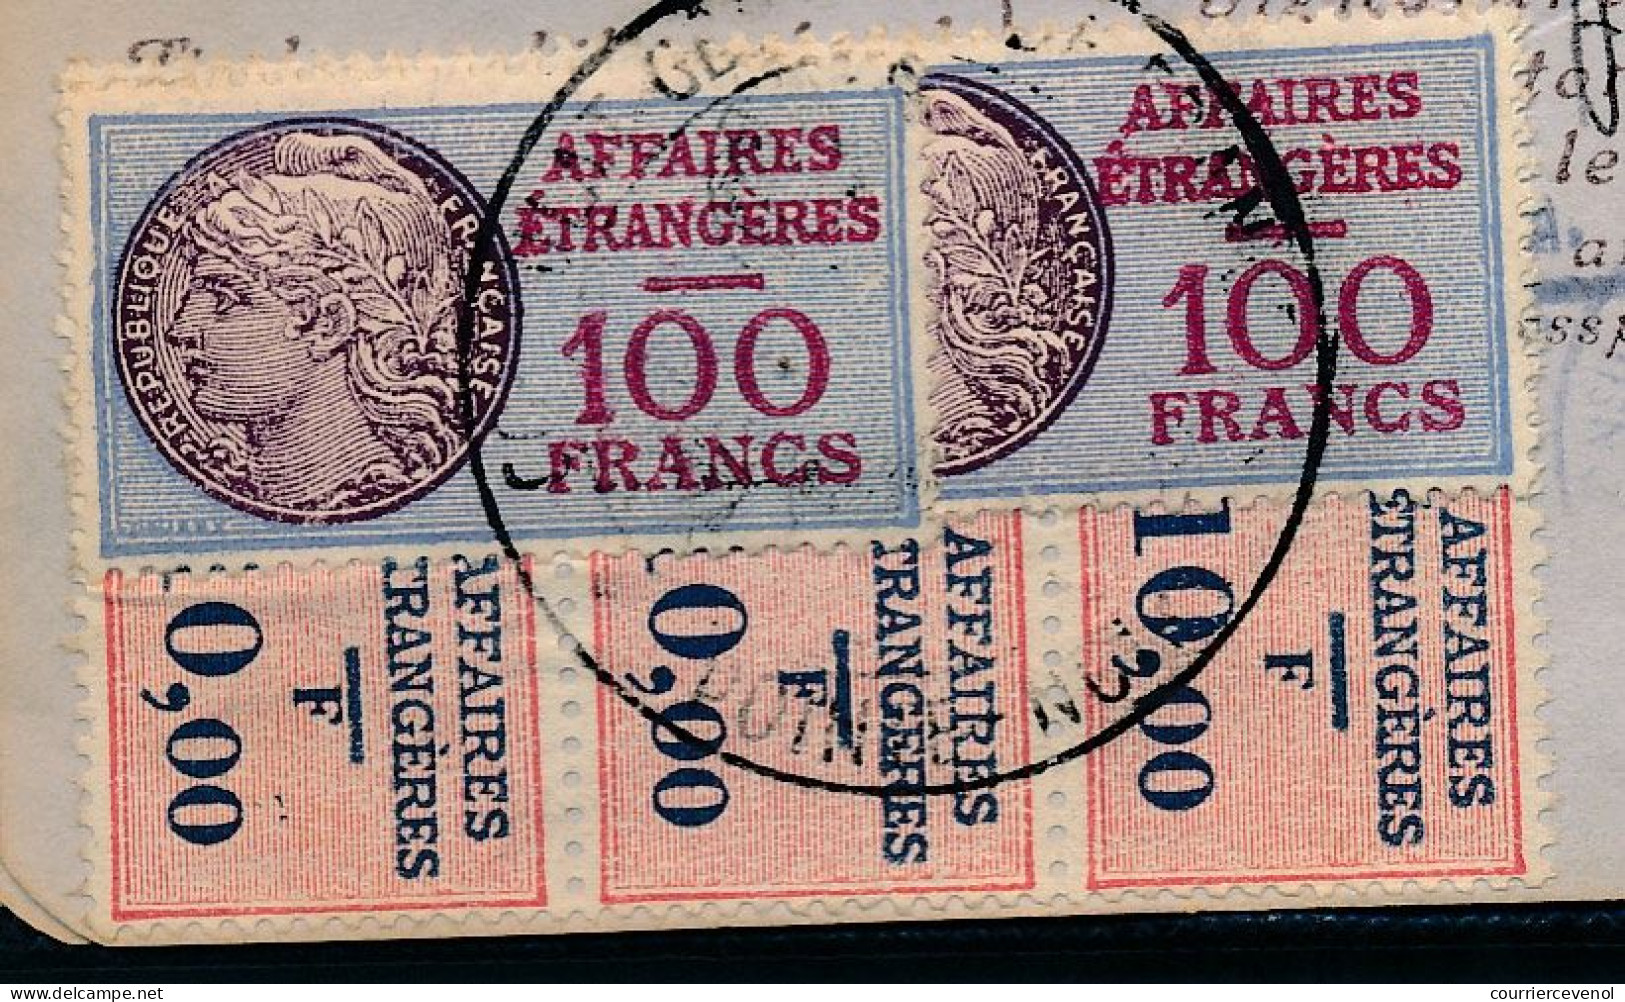 FRANCE - Passeport Délivré à Pointe Noire (Congo Français) 1964 - Visas France, Portugal, Congo - Lettres & Documents